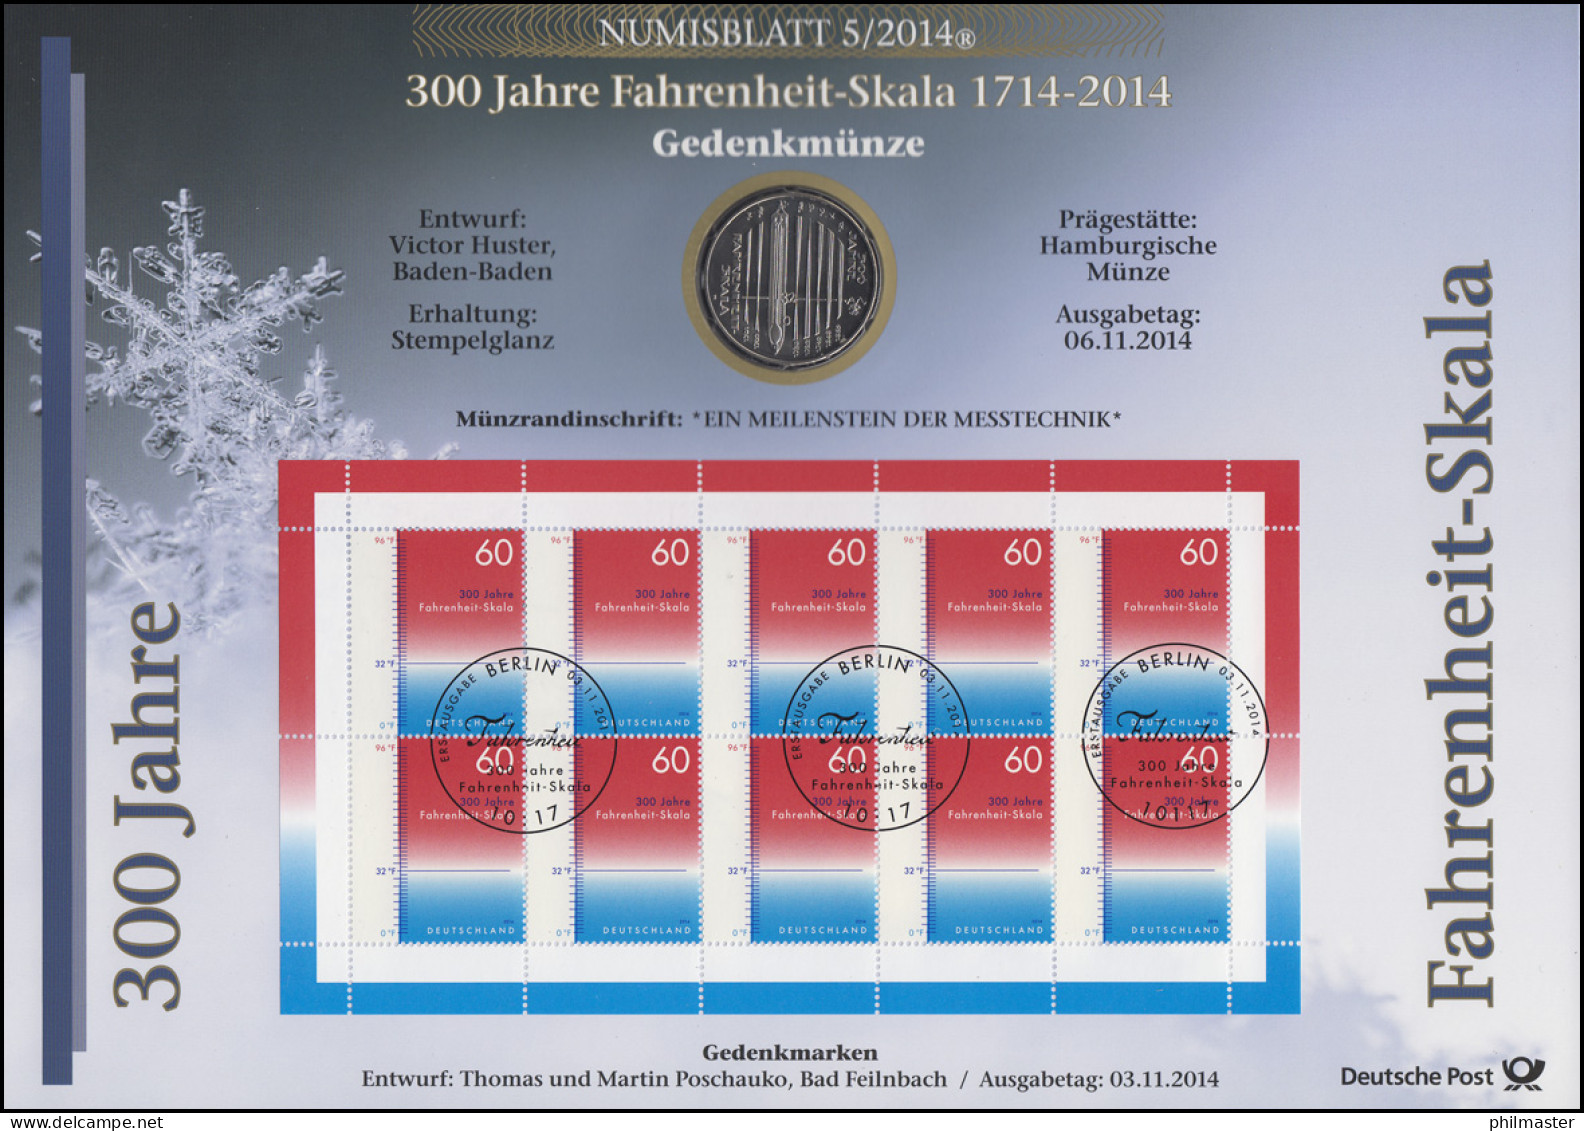 3109 300 Jahre Fahrenheit-Skala - Numisblatt 5/2014 - Numisbriefe